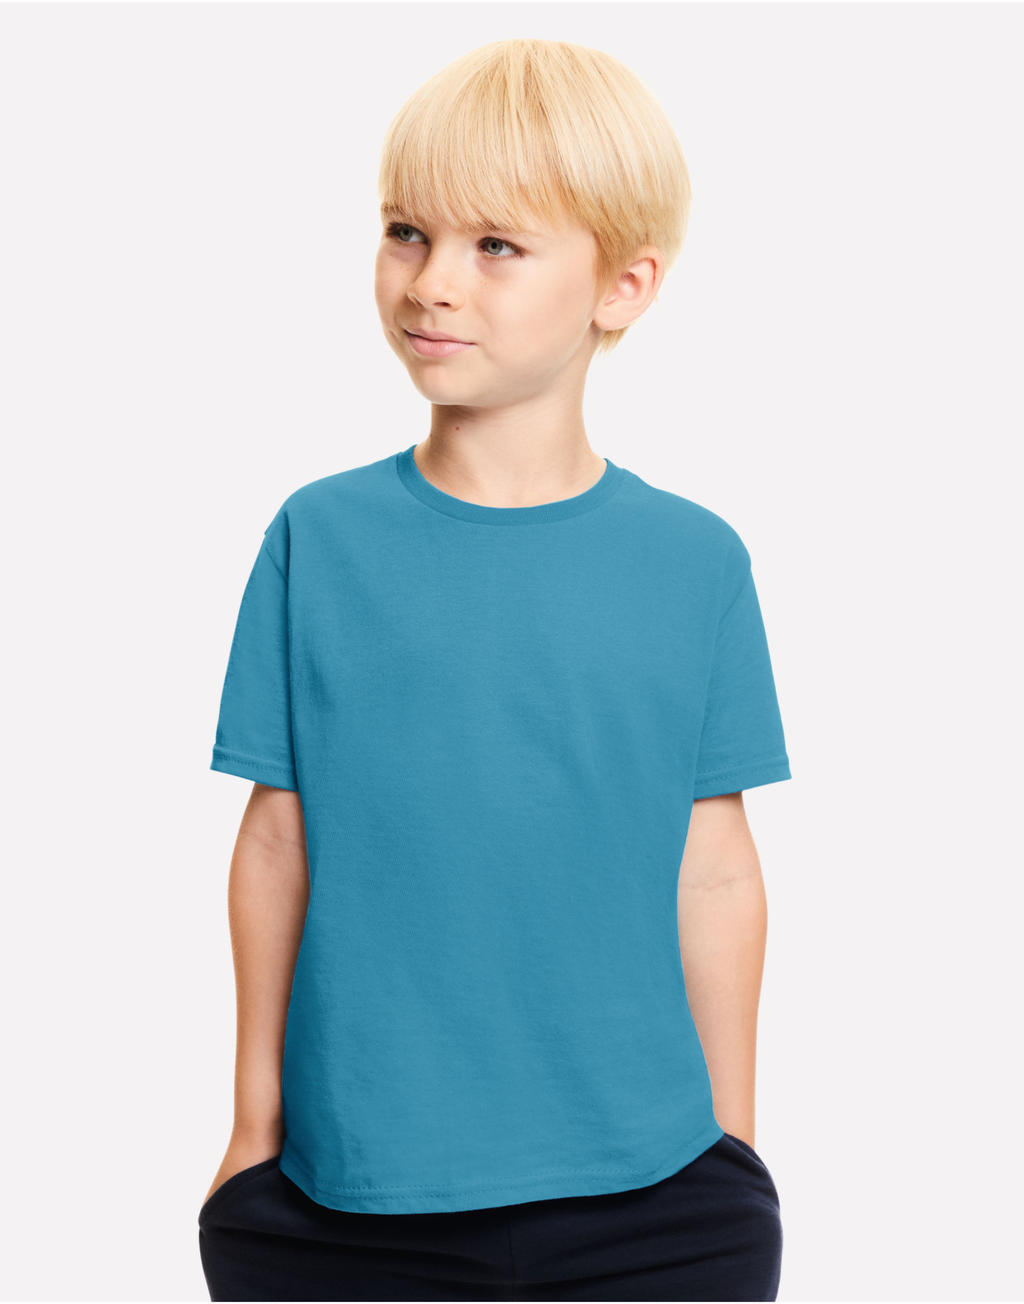 Fruit of the Loom 61-023-0 Kids Iconic T-Shirt kaufen | Basic-Shirts